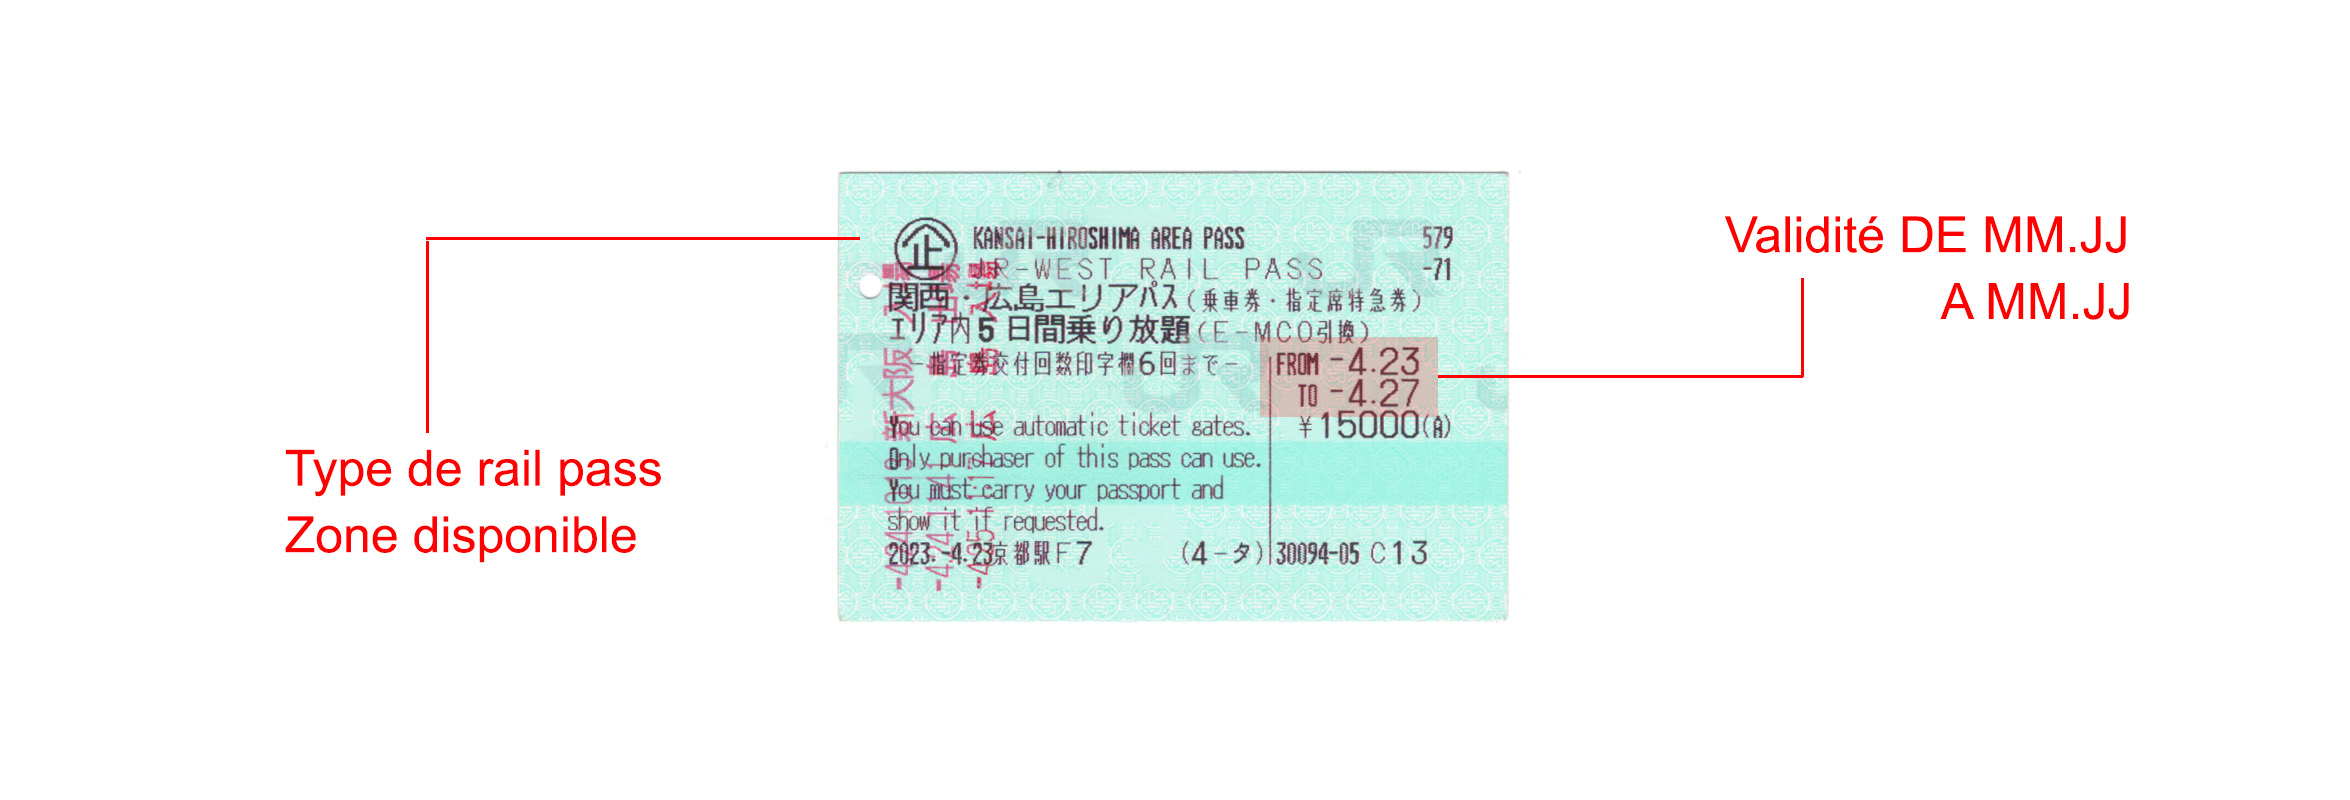 Achetez votre rail pass au Japon